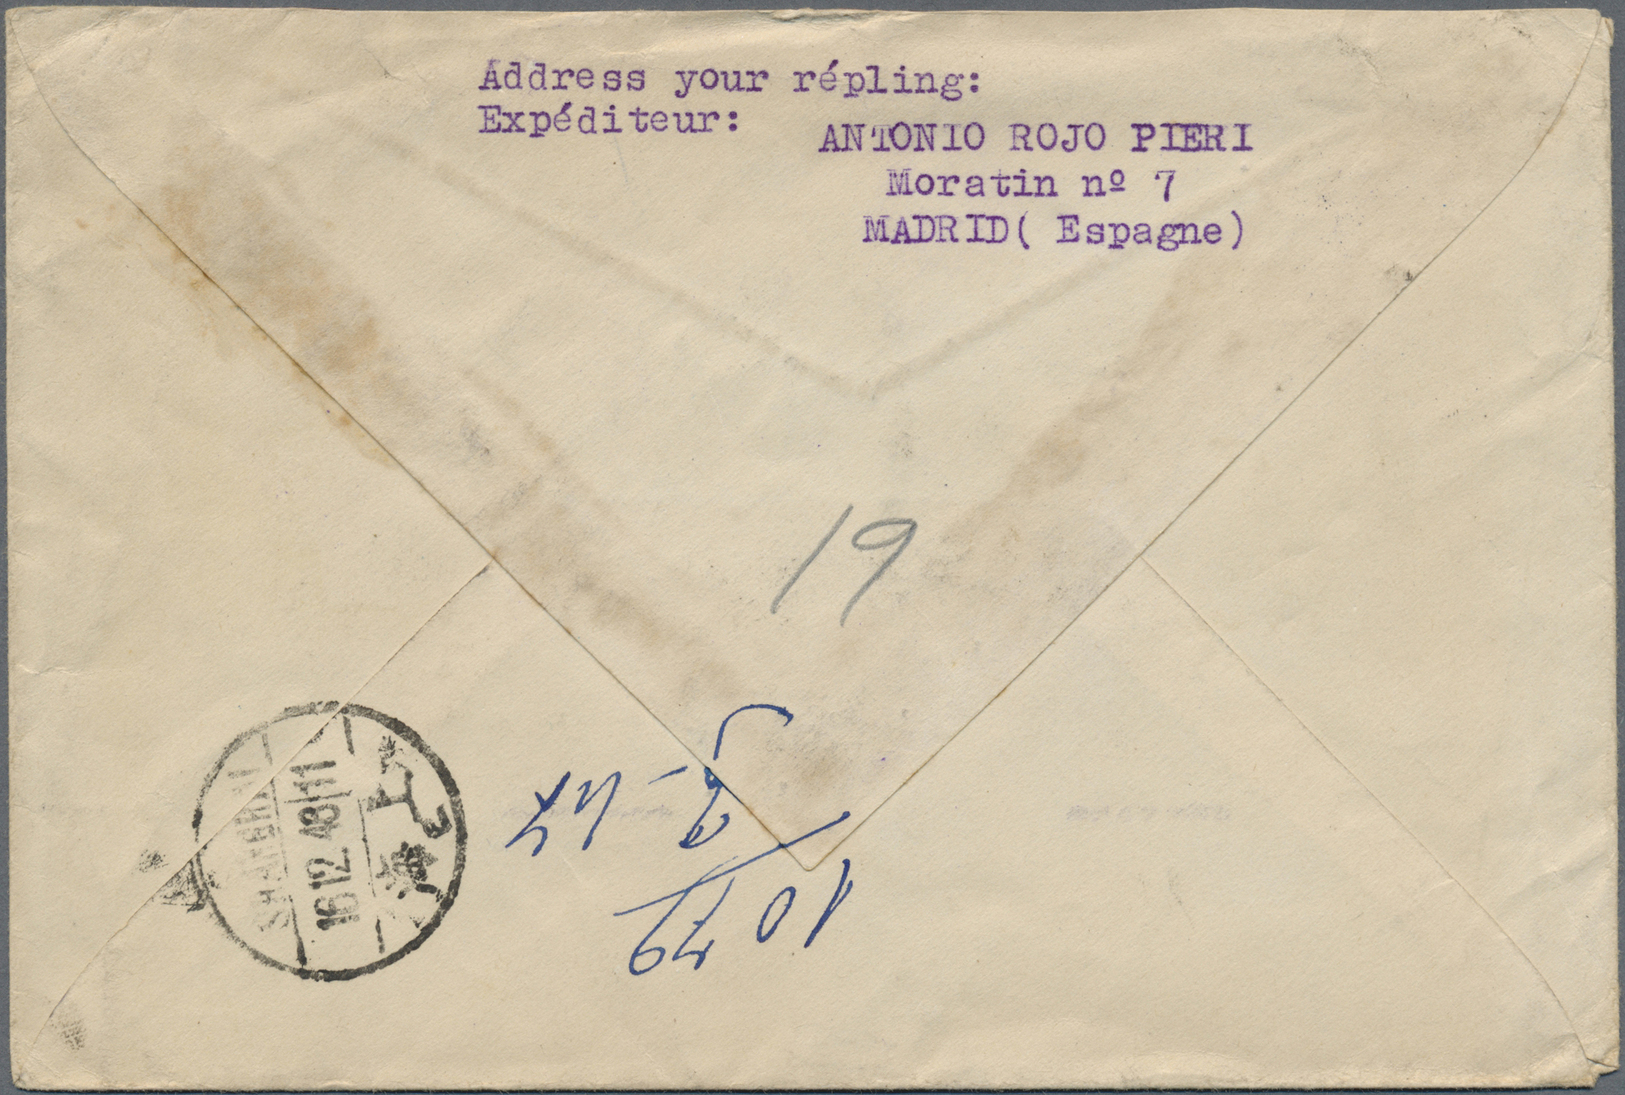 Br Mandschuko (Manchuko): 1946. Registered Envelope Written From Spain Addressed To Harbin, China Bearing Spain SG 903, - 1932-45 Manchuria (Manchukuo)